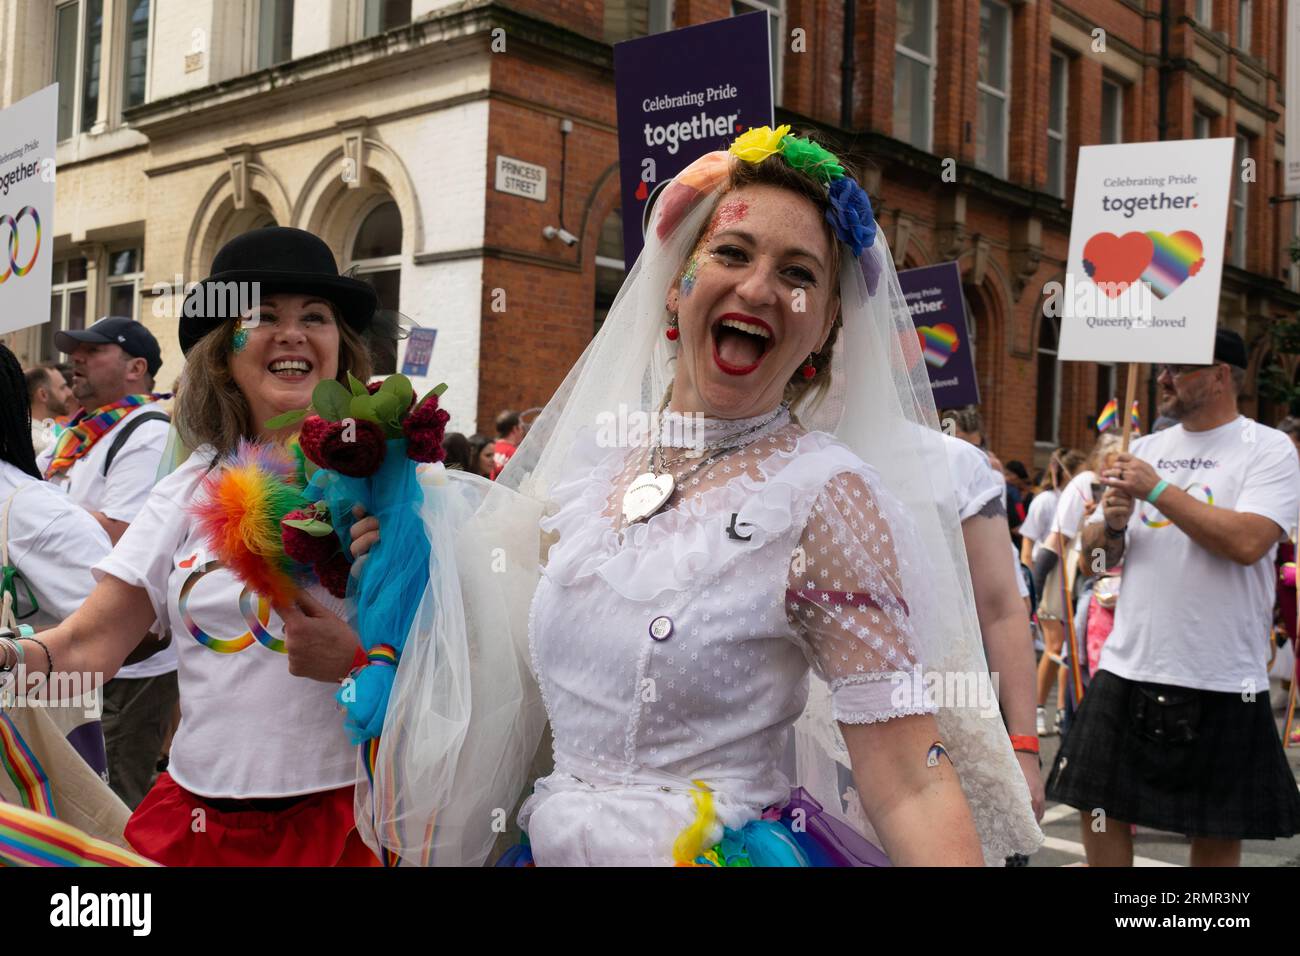 Manchester Pride parade 2023. Deux femmes en robes de mariée célébrant l'anniversaire de l'égalité de mariage.Theme Queerly Beloved. Banque D'Images